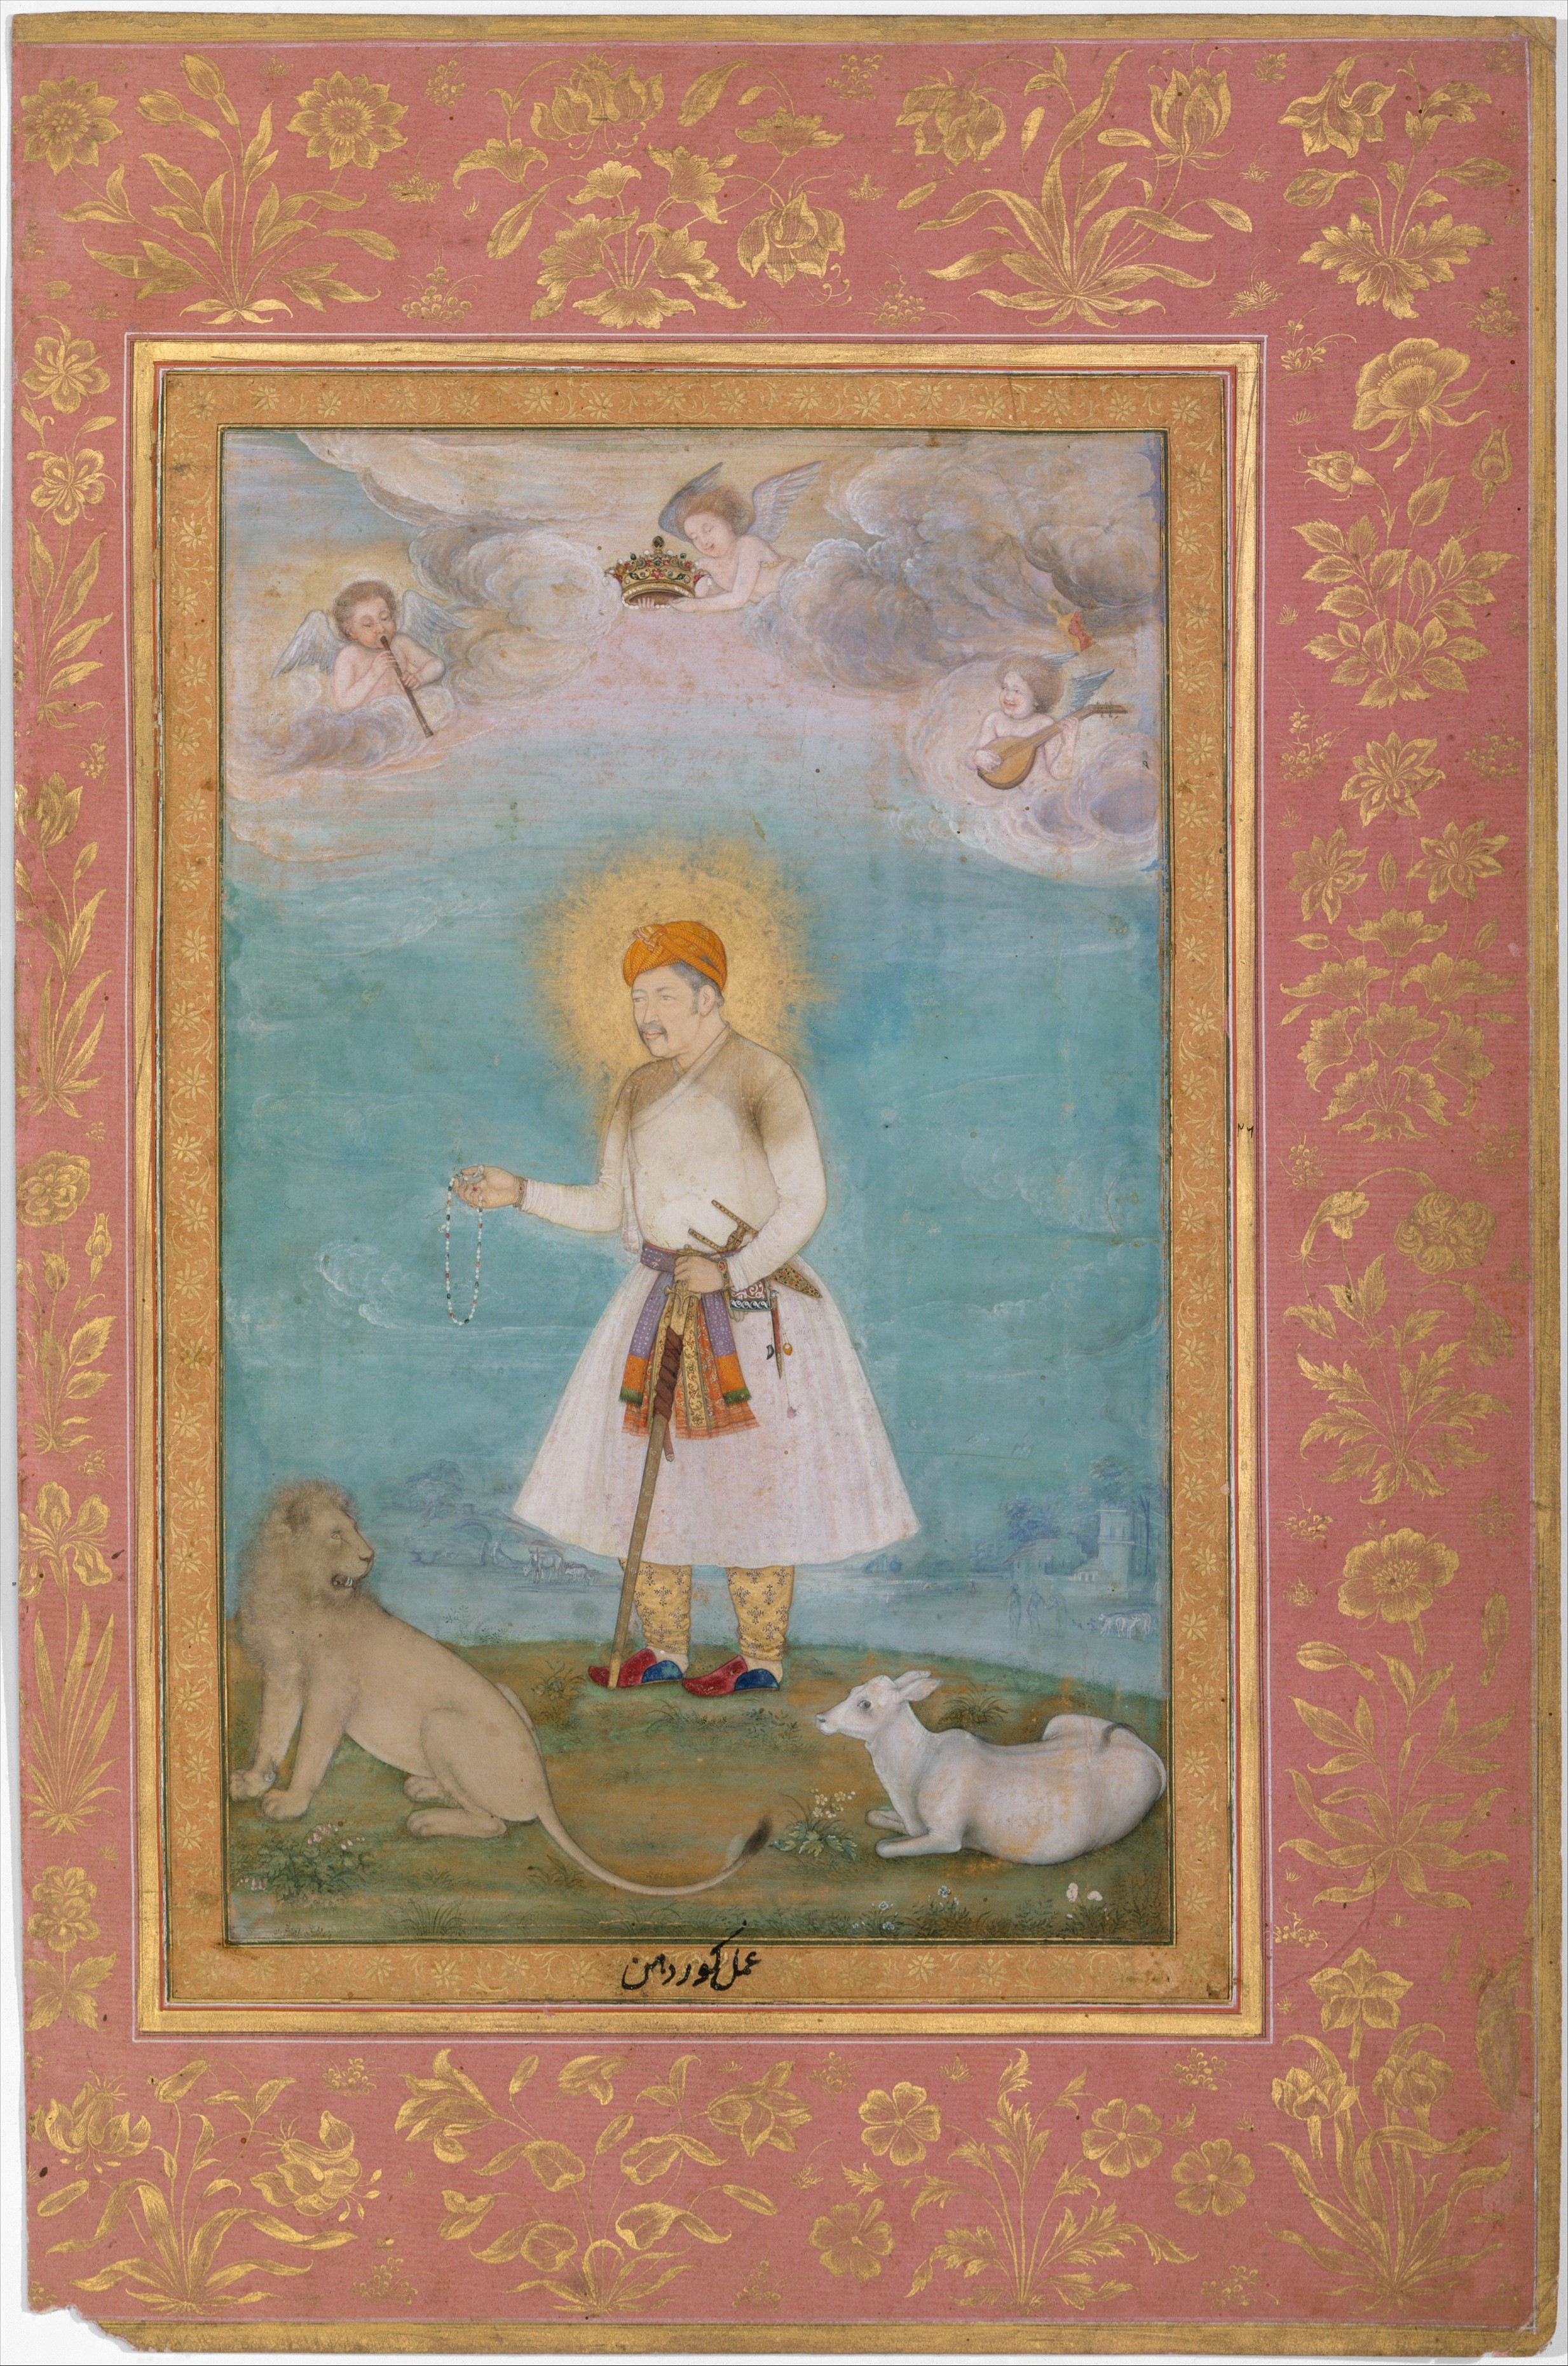 帶著獅子和小牛的賈拉勒·丁·阿克巴爾 by  Govardhan - 1630年 